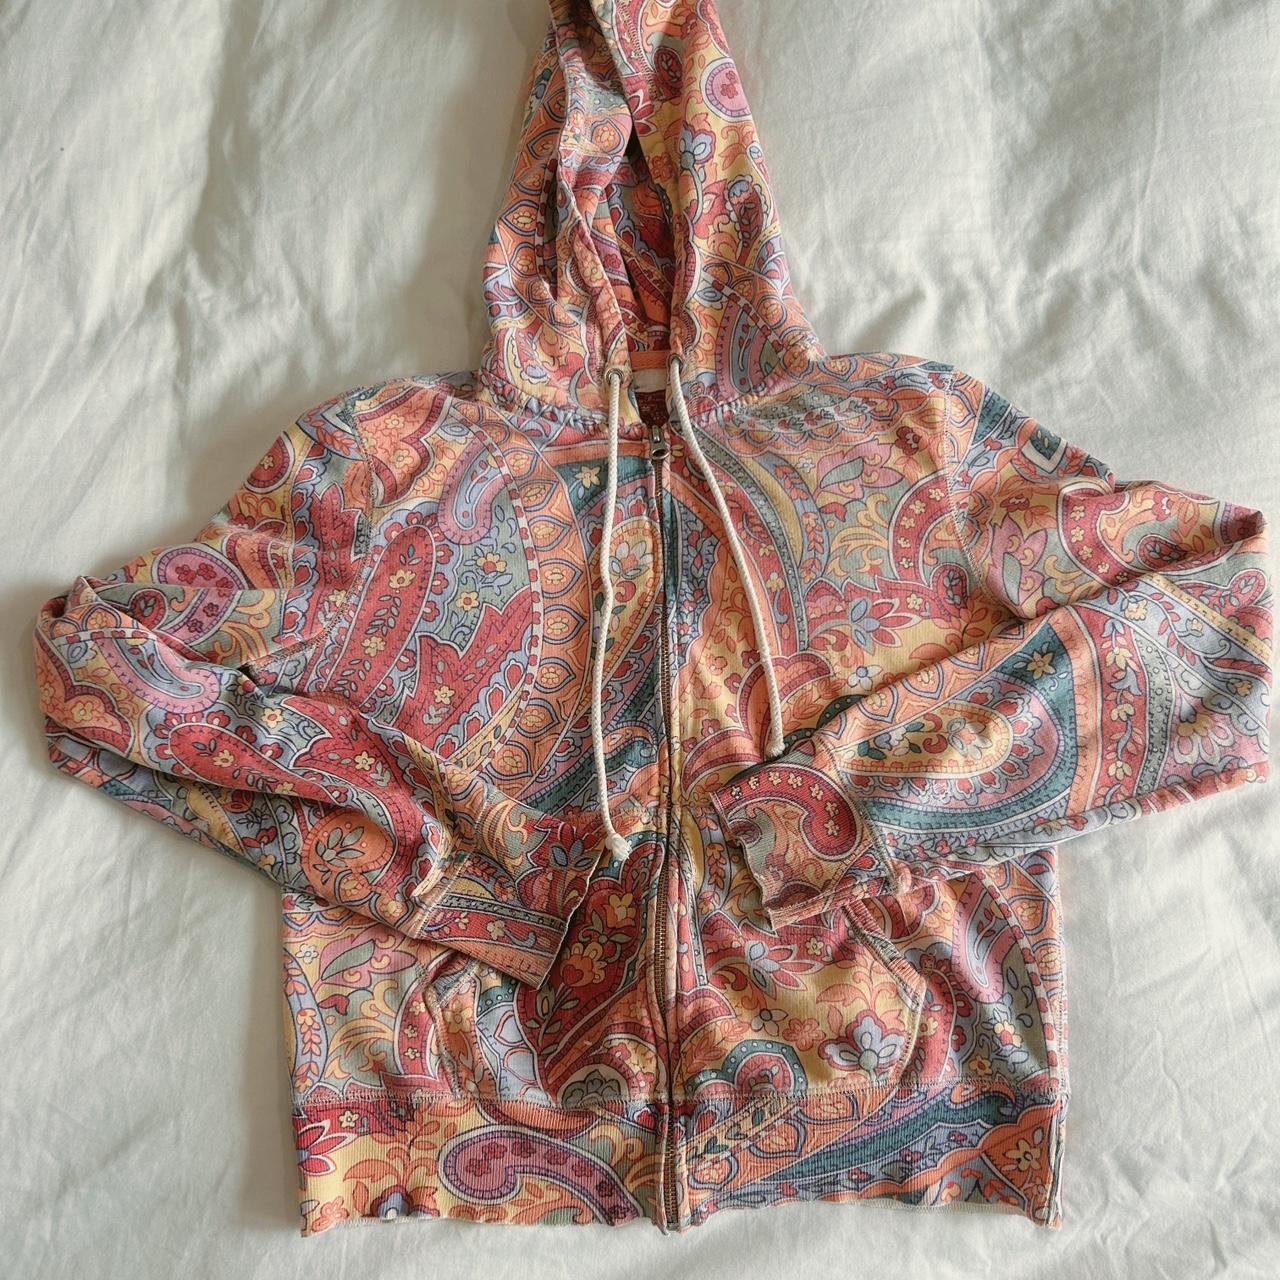 Pastel Y2K paisley lucky brand zip up hoodie! This - Depop